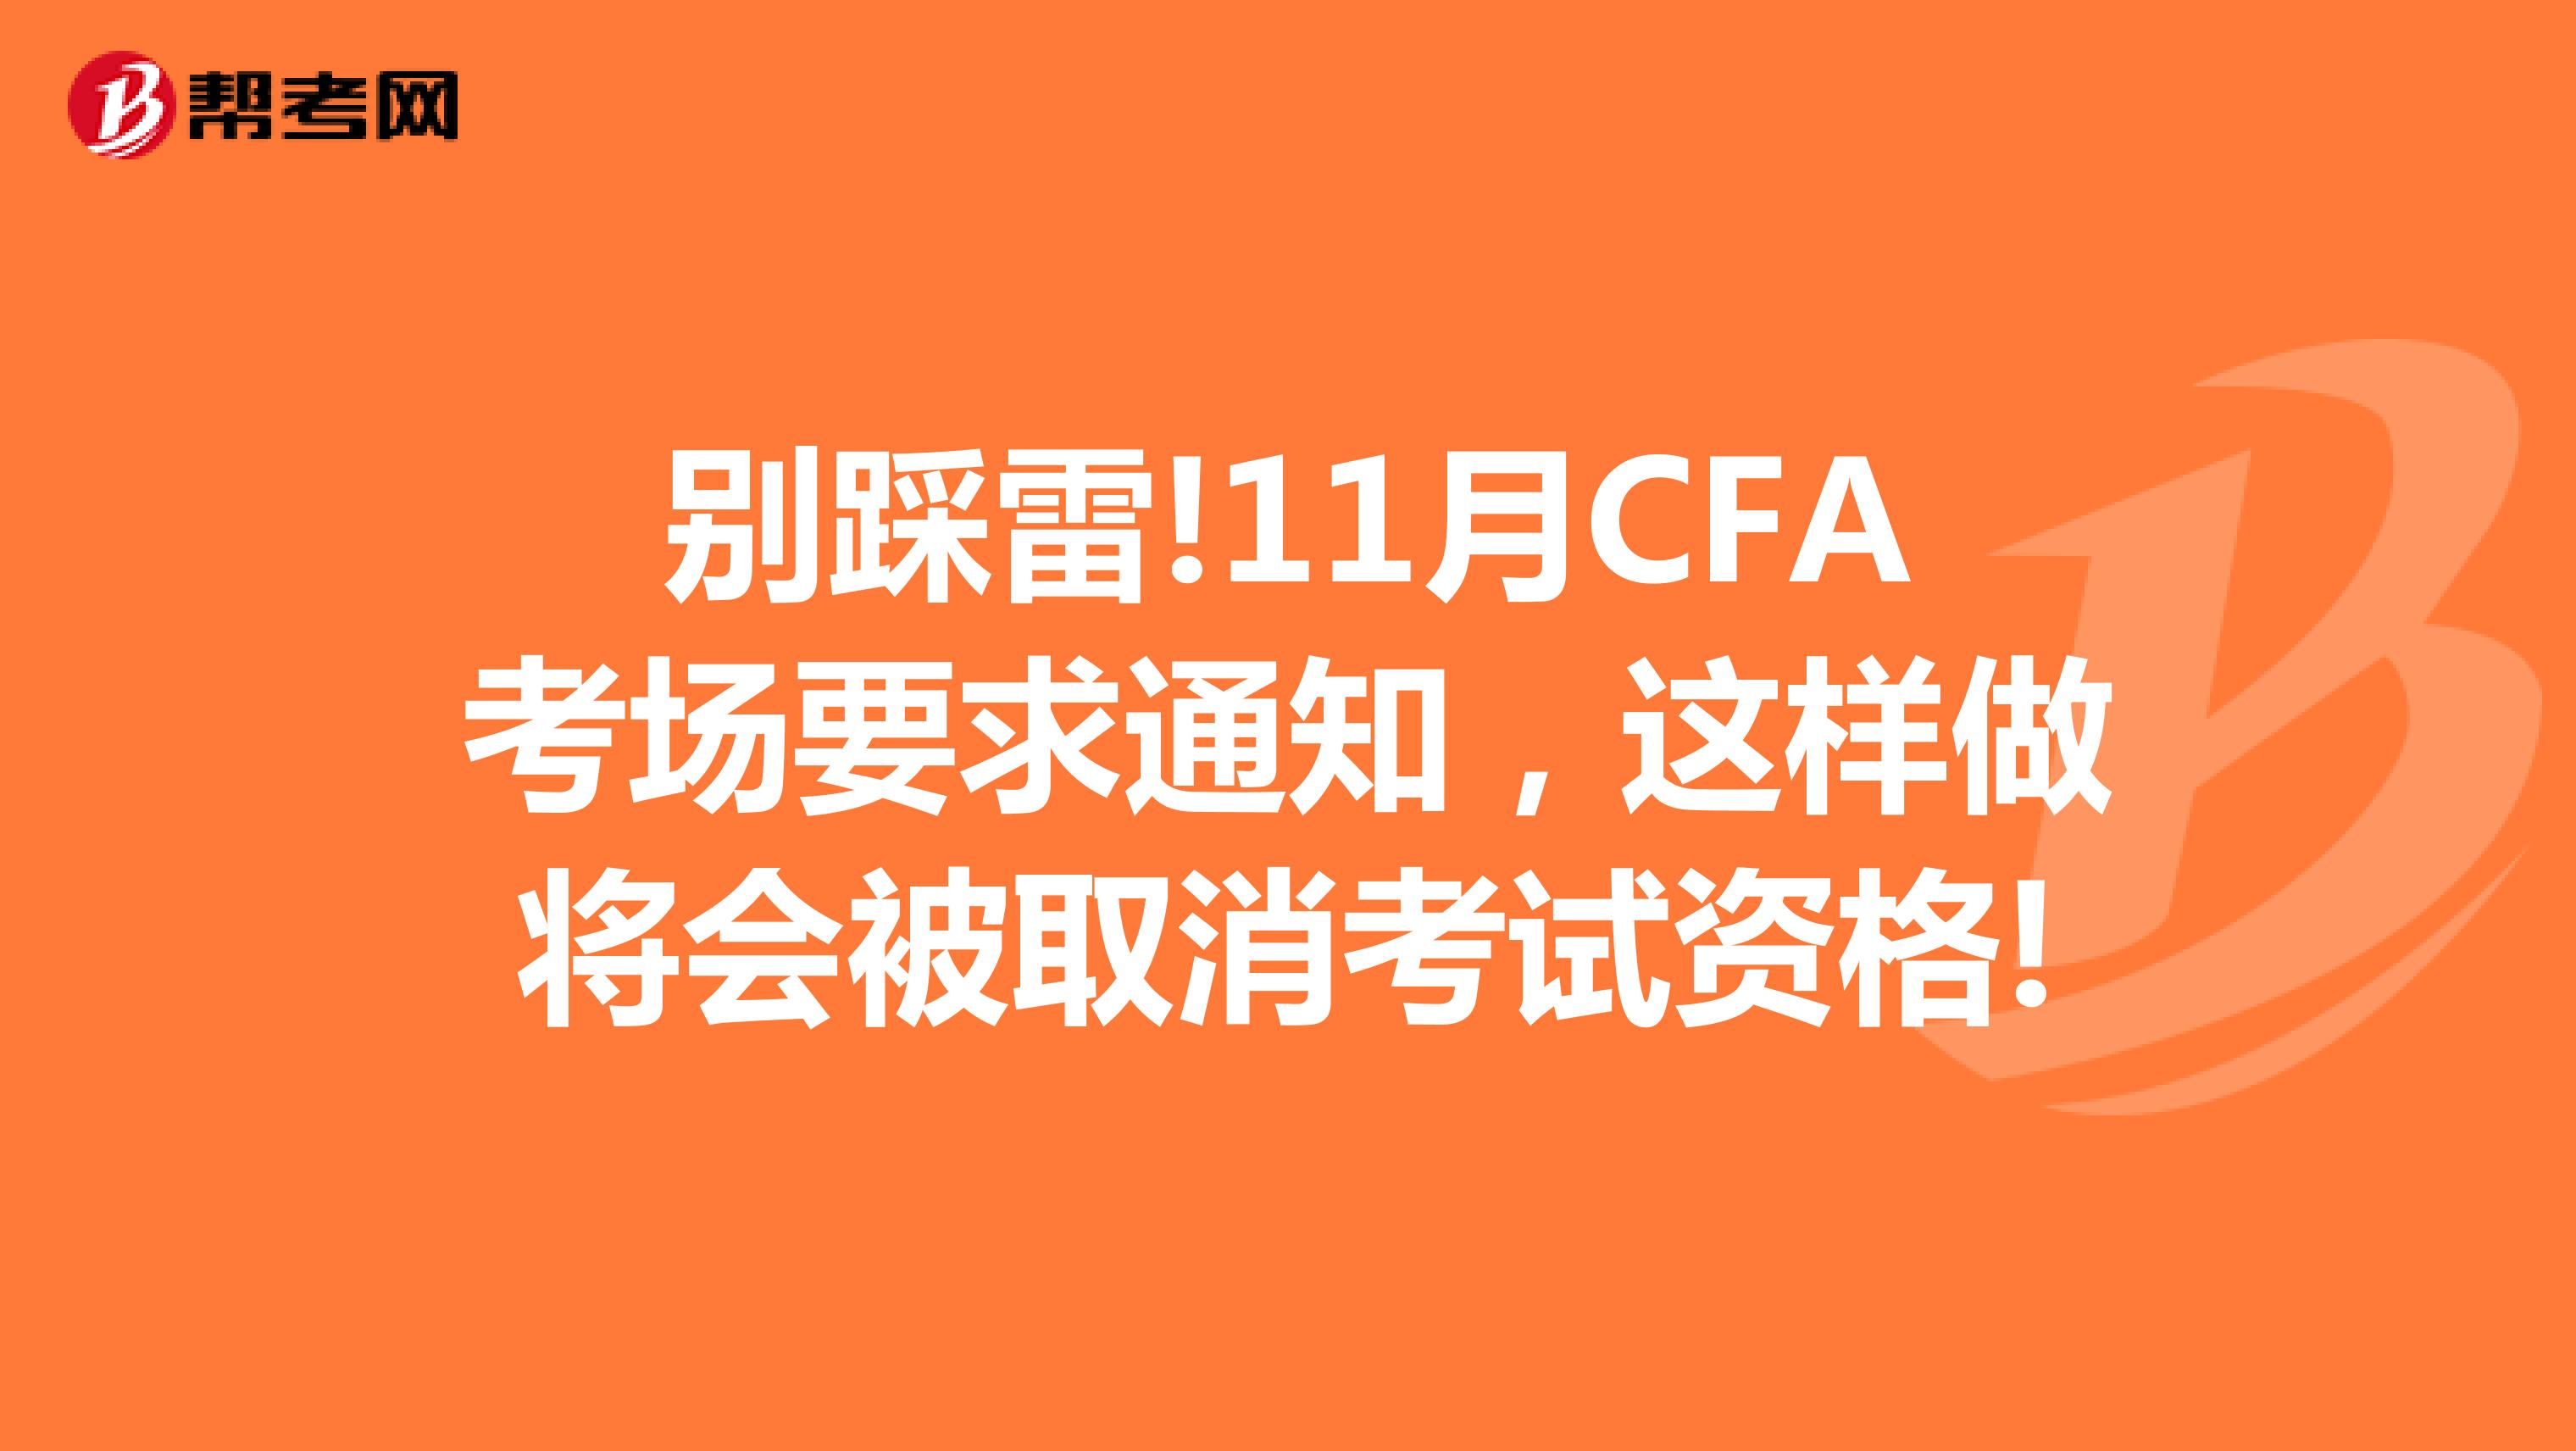 别踩雷!11月CFA考场要求通知，这样做将会被取消考试资格!